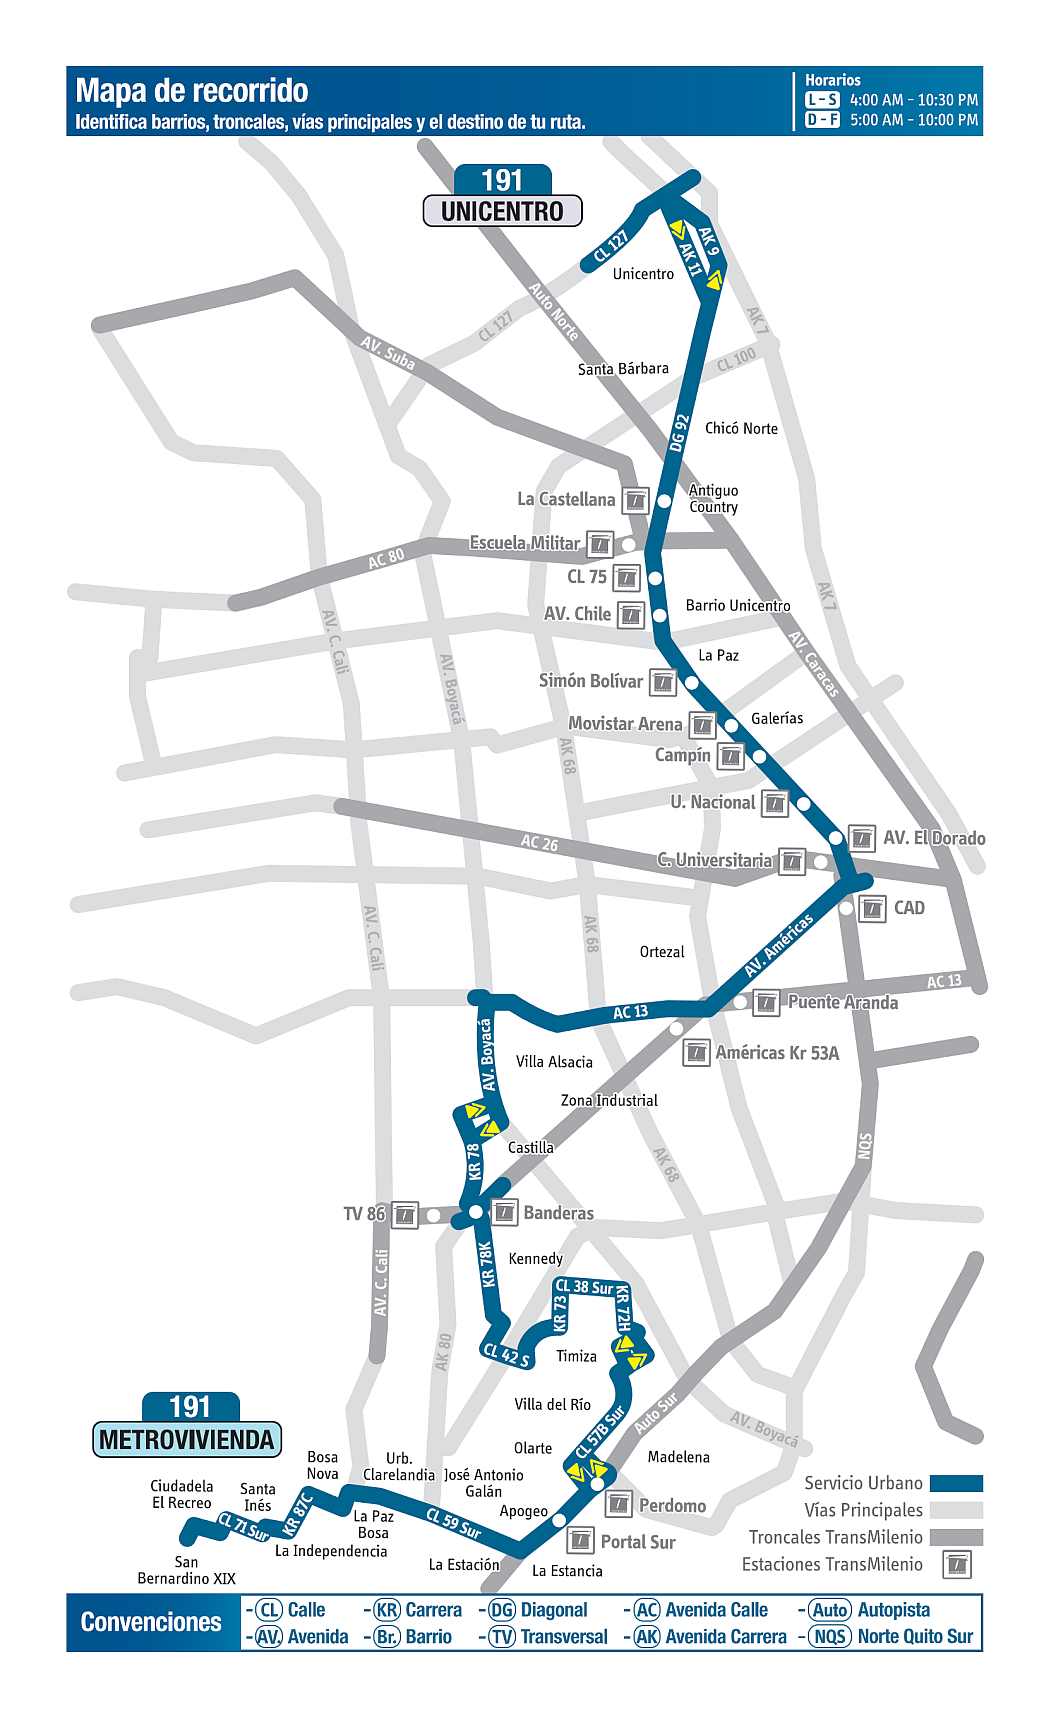 191 Unicentro - Metrovivienda, mapa bus urbano Bogotá